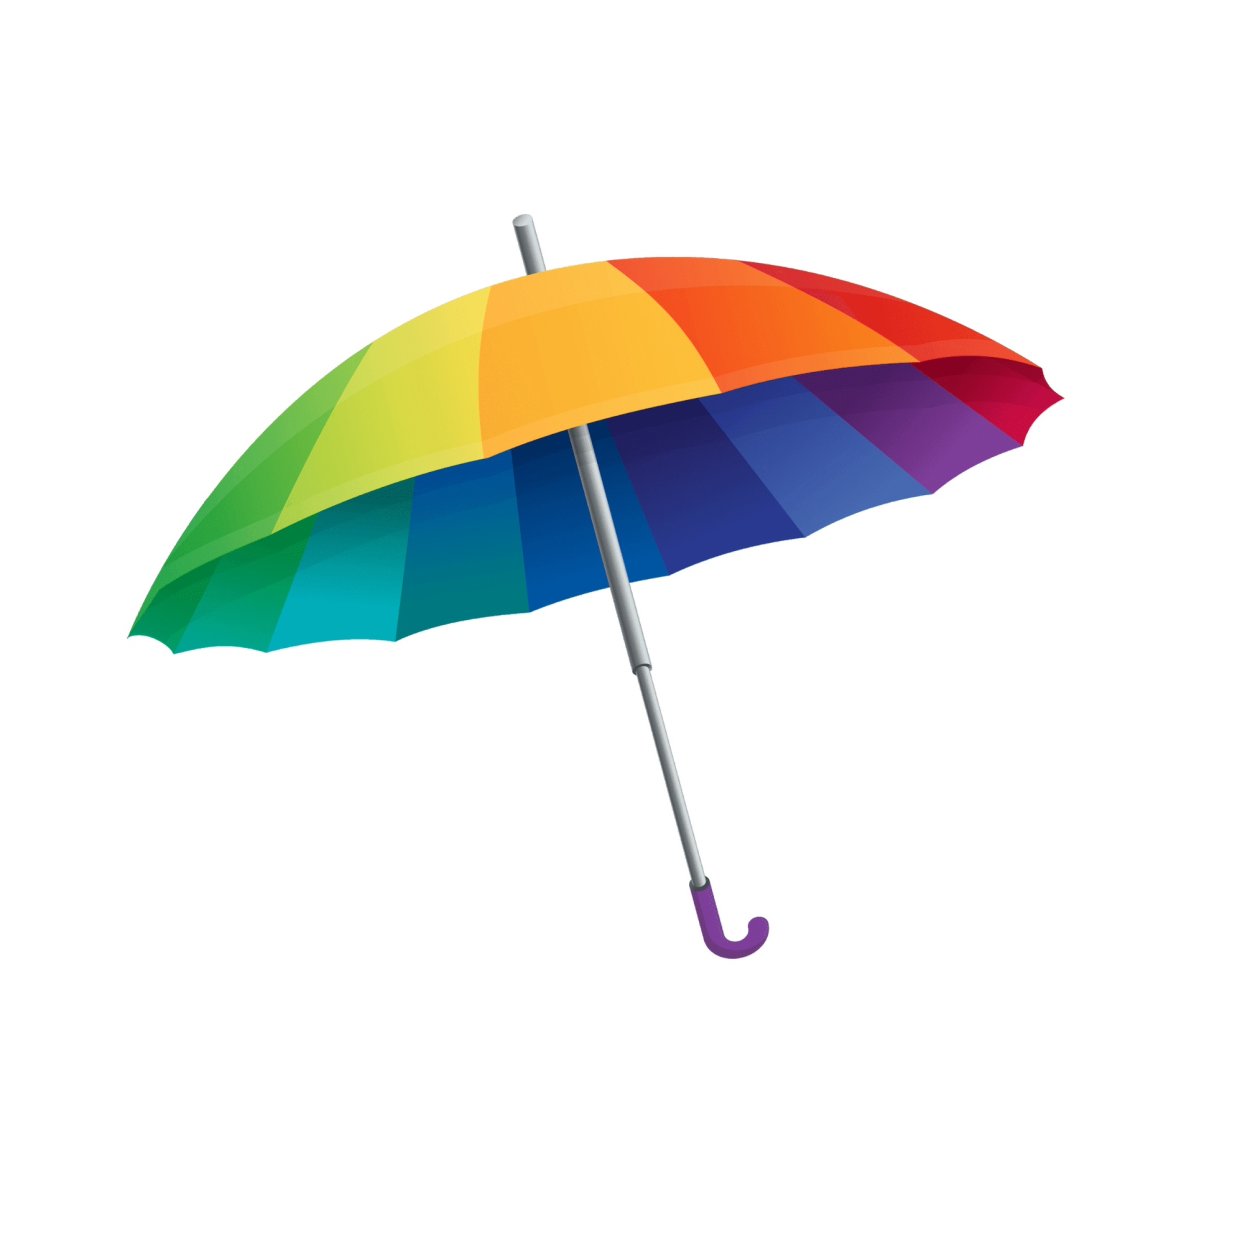 Цветные зонтики. Разноцветный зонт. Зонтики яркие. Зонт на белом фоне. Яркий зонтик